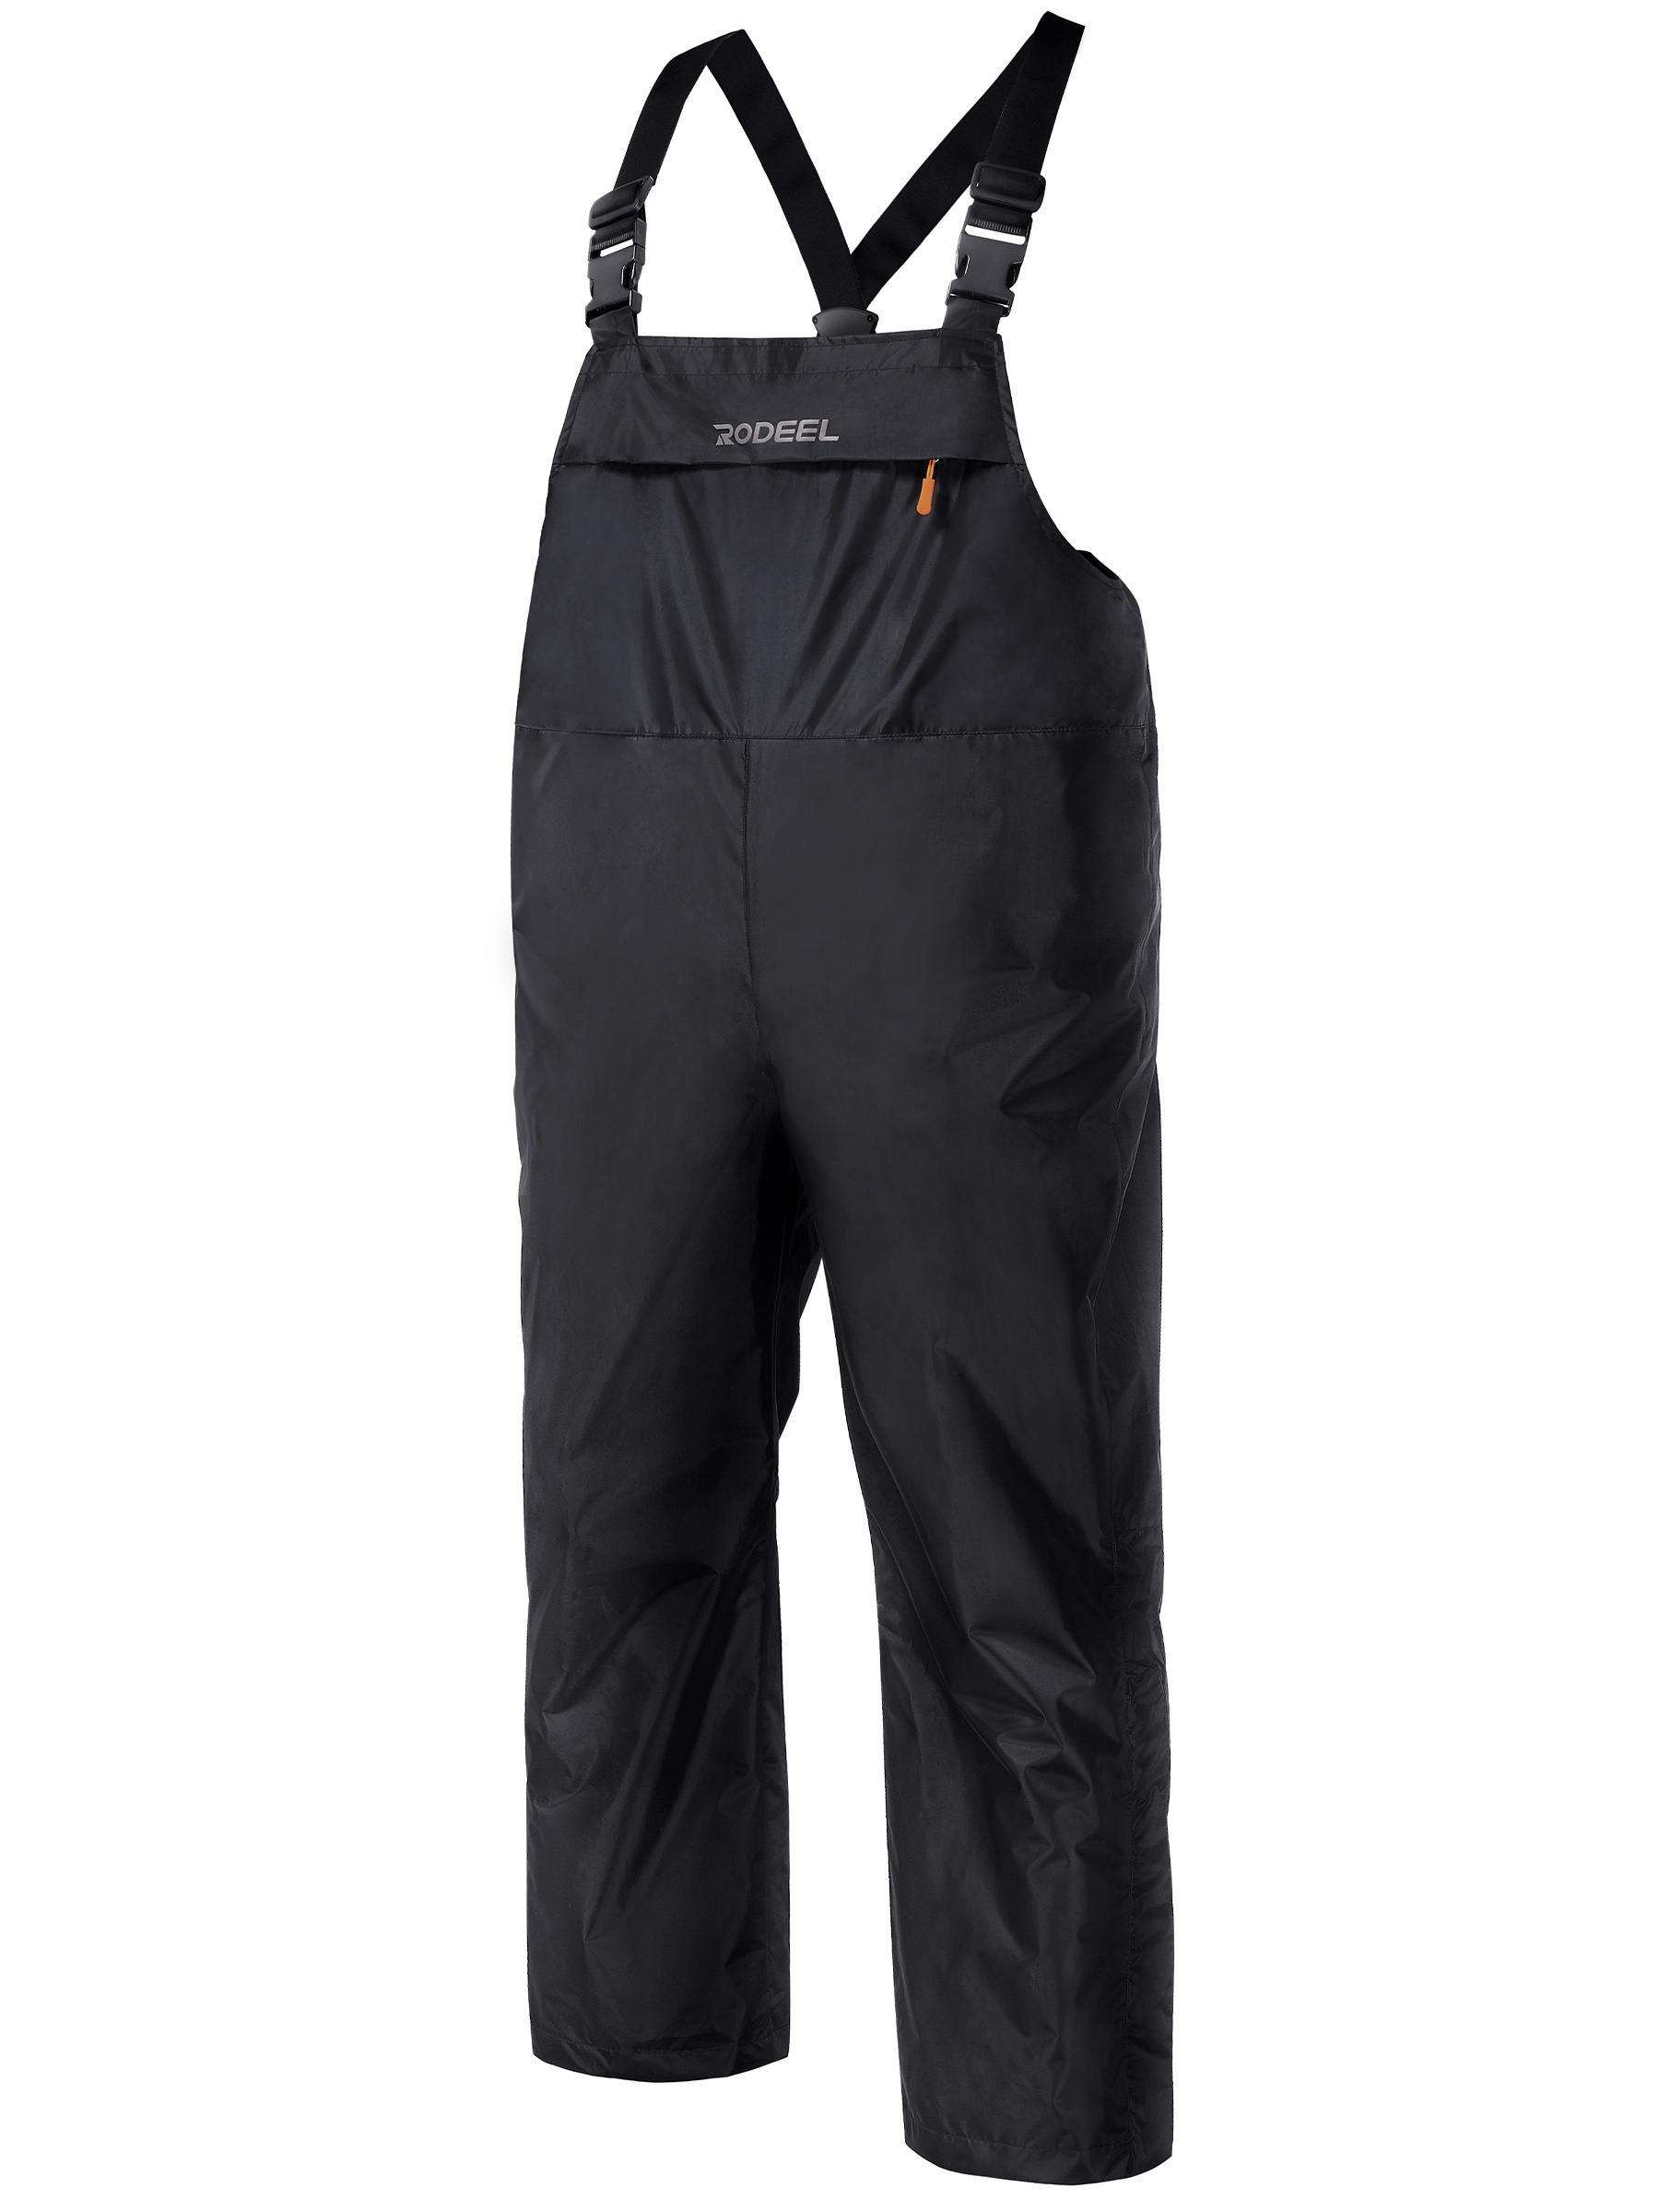 Men's Waterproof Adjustable Strap Outdoor Pants, Suspenders Breathable Fishing Rain Pants, Ski Pants,Braces,Trousers